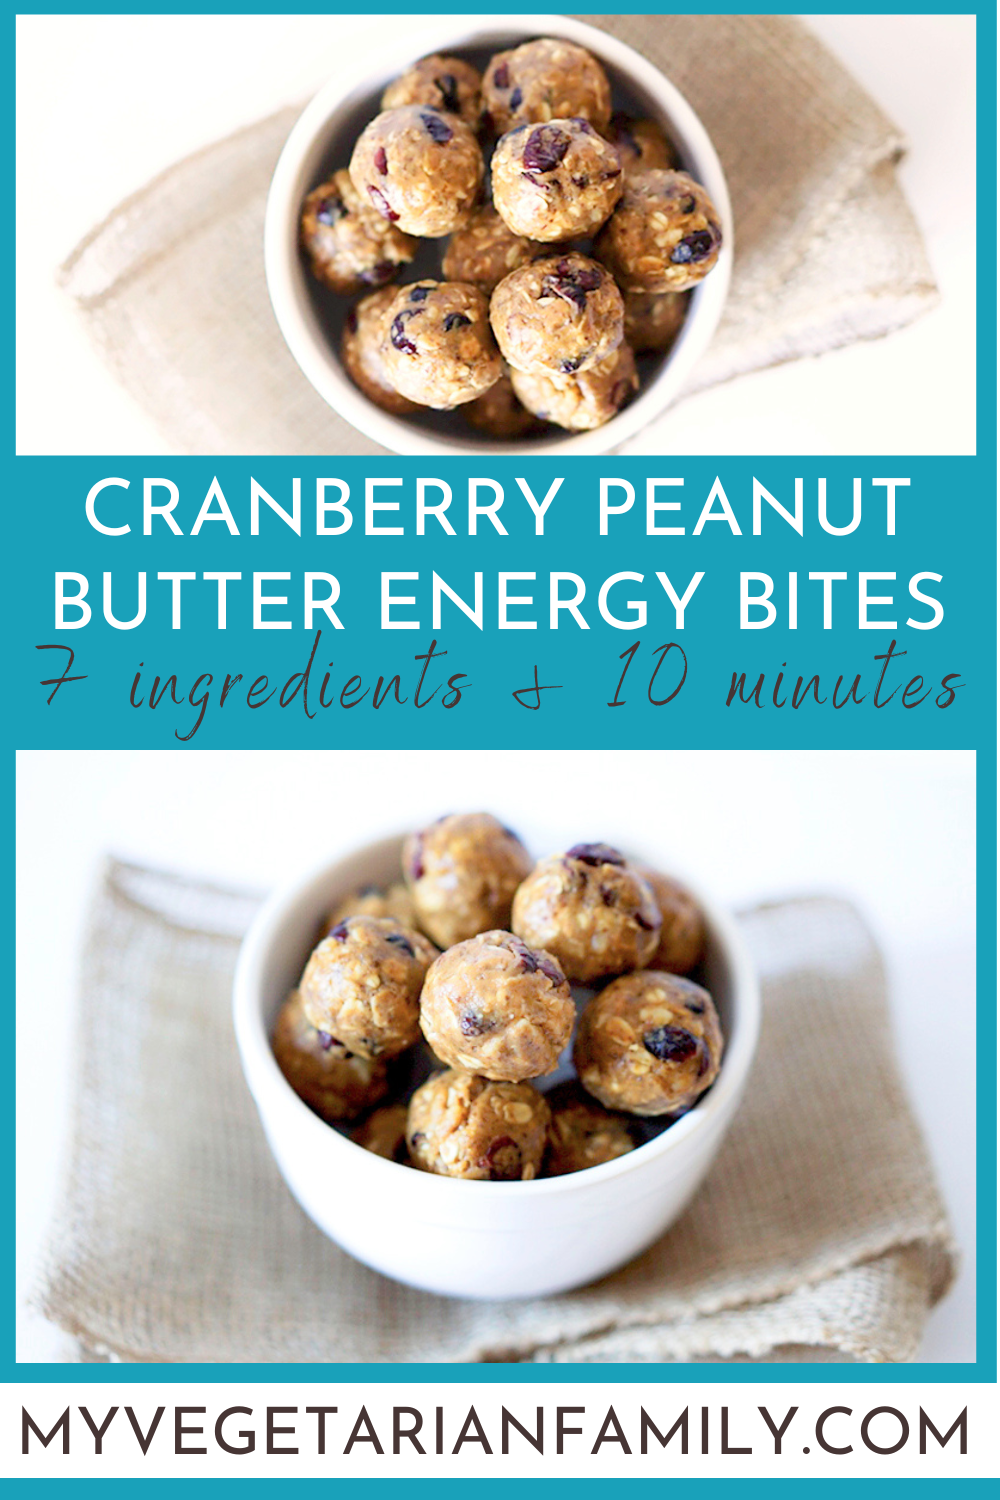 Cranberry Peanut Butter Energy Bites | My Vegetarian Family #cranberryenergybites #veganglutenfreesnack